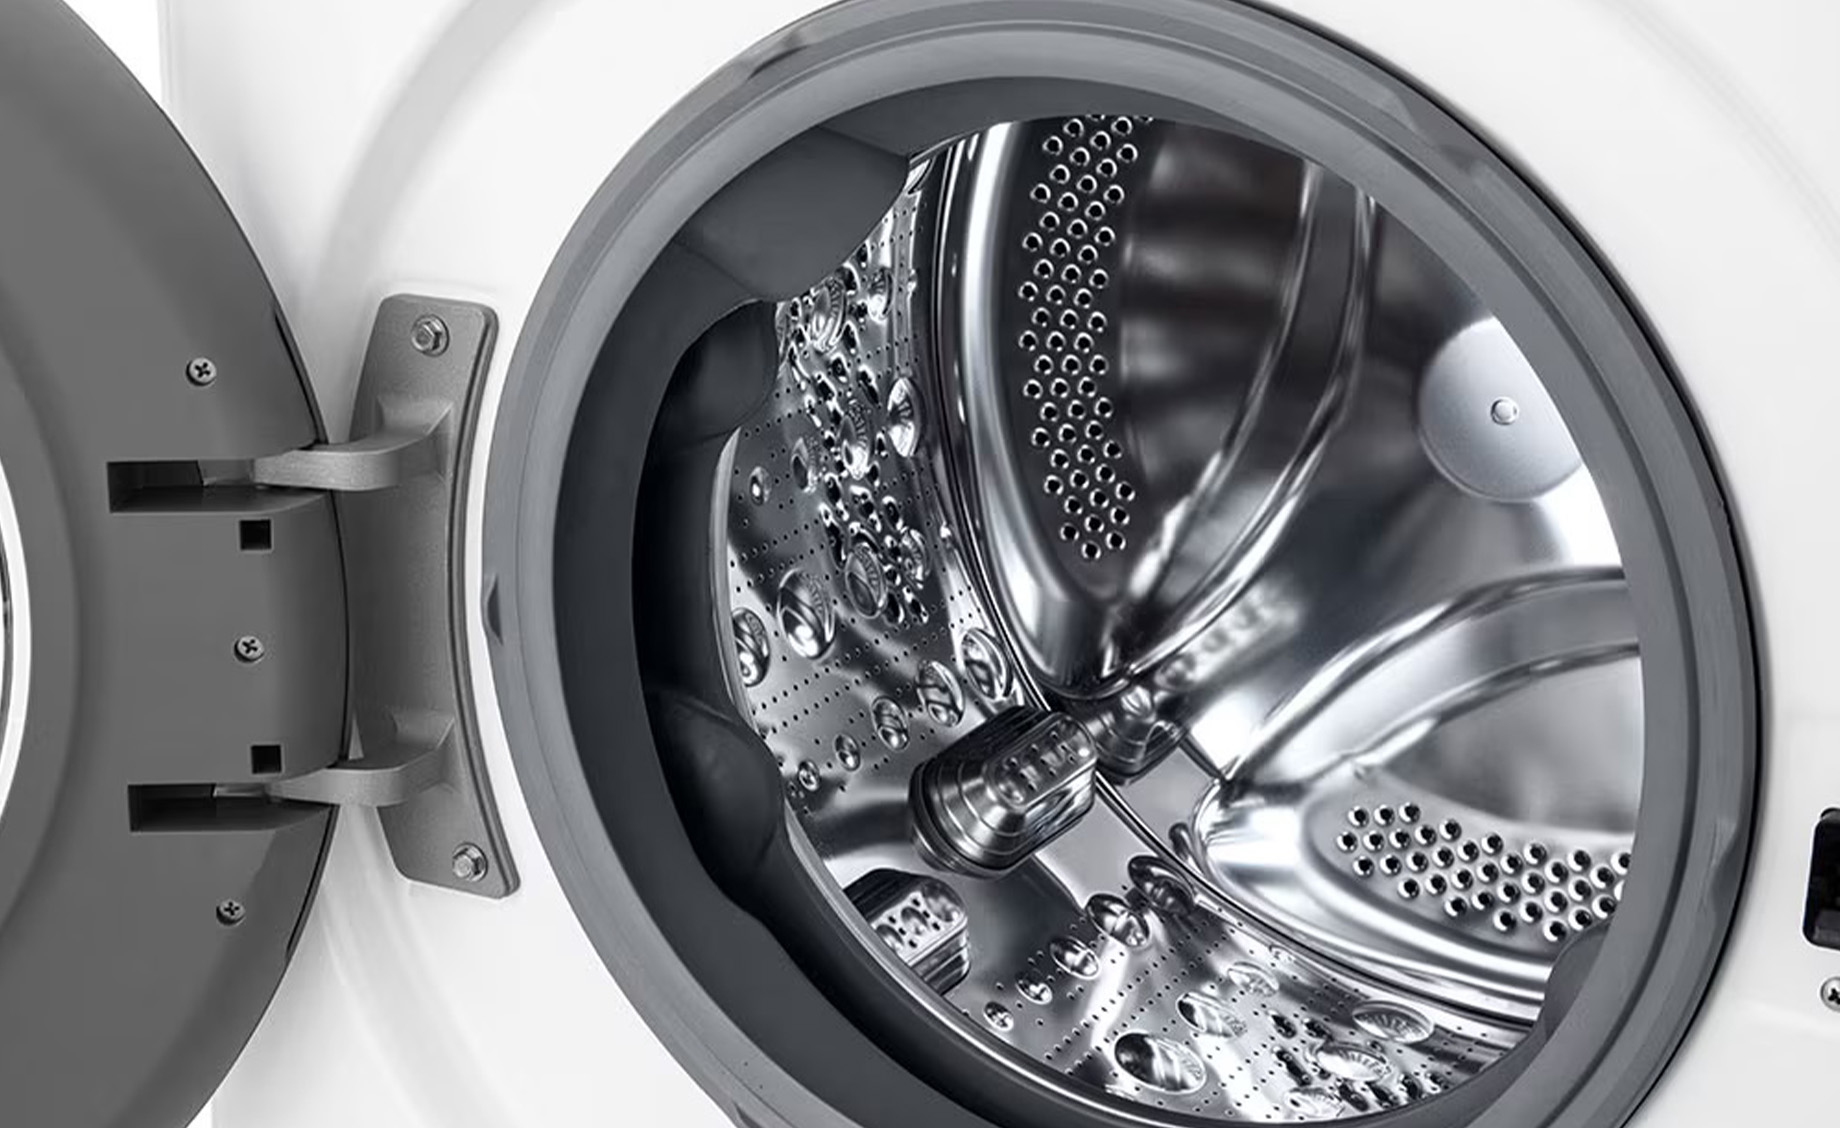 LG F2WR509SWW mašina za pranje veša